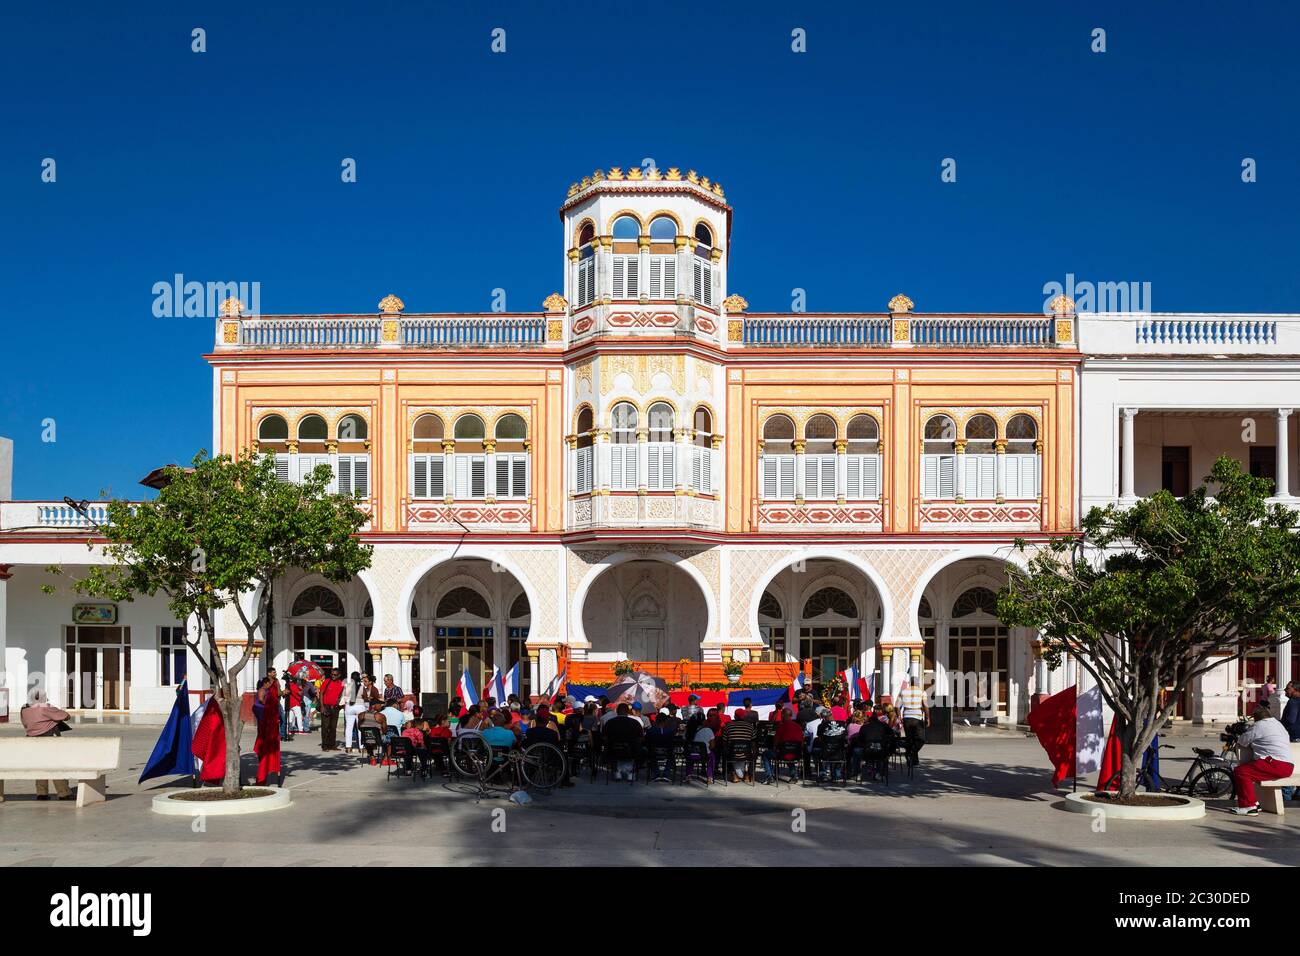 Maurische Architektur des Rathauses im Parque Cespedes, davor ist eine Veranstaltung gerade in Vorbereitung, Manzanillo, Kuba Stockfoto